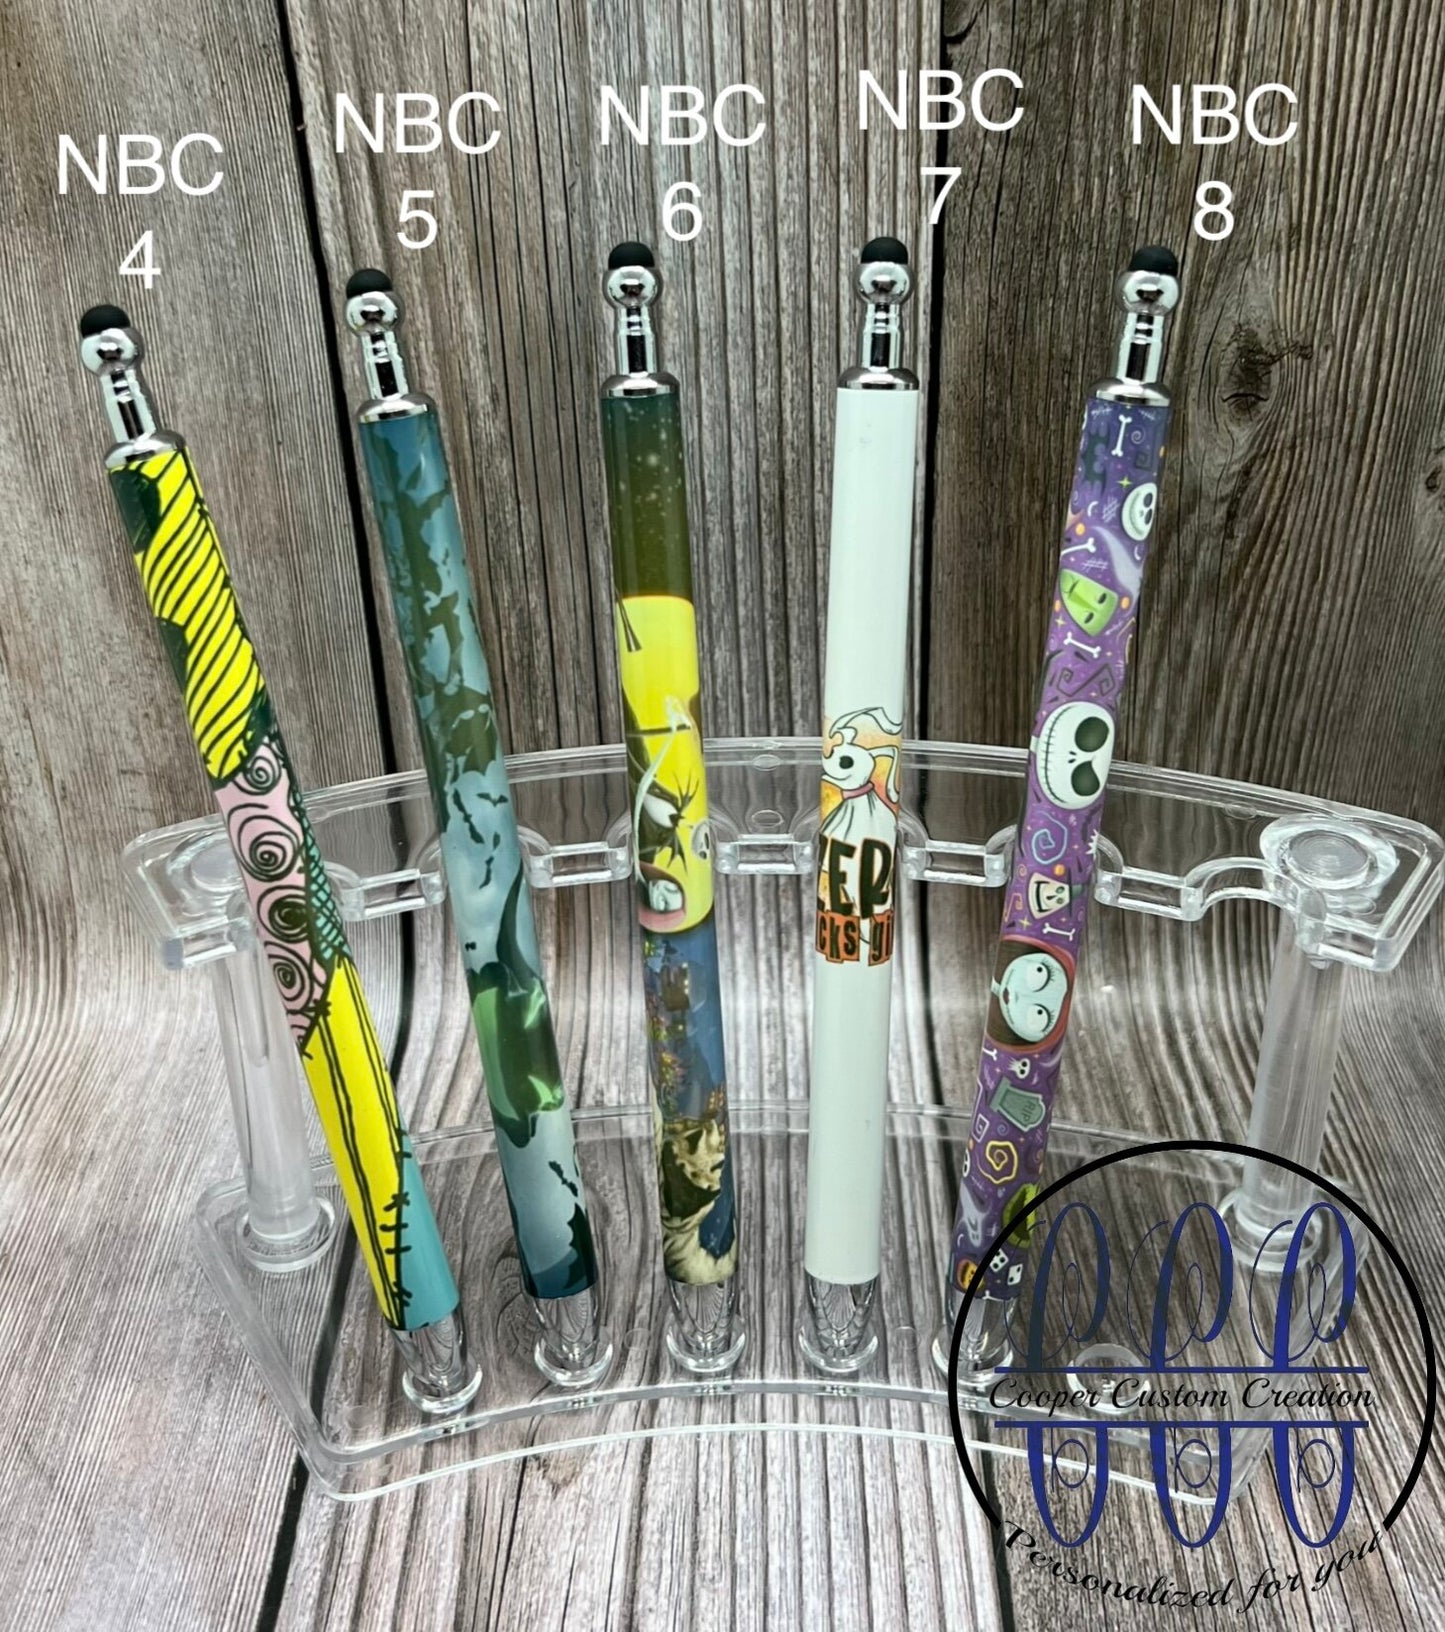 NBC sublimation pens